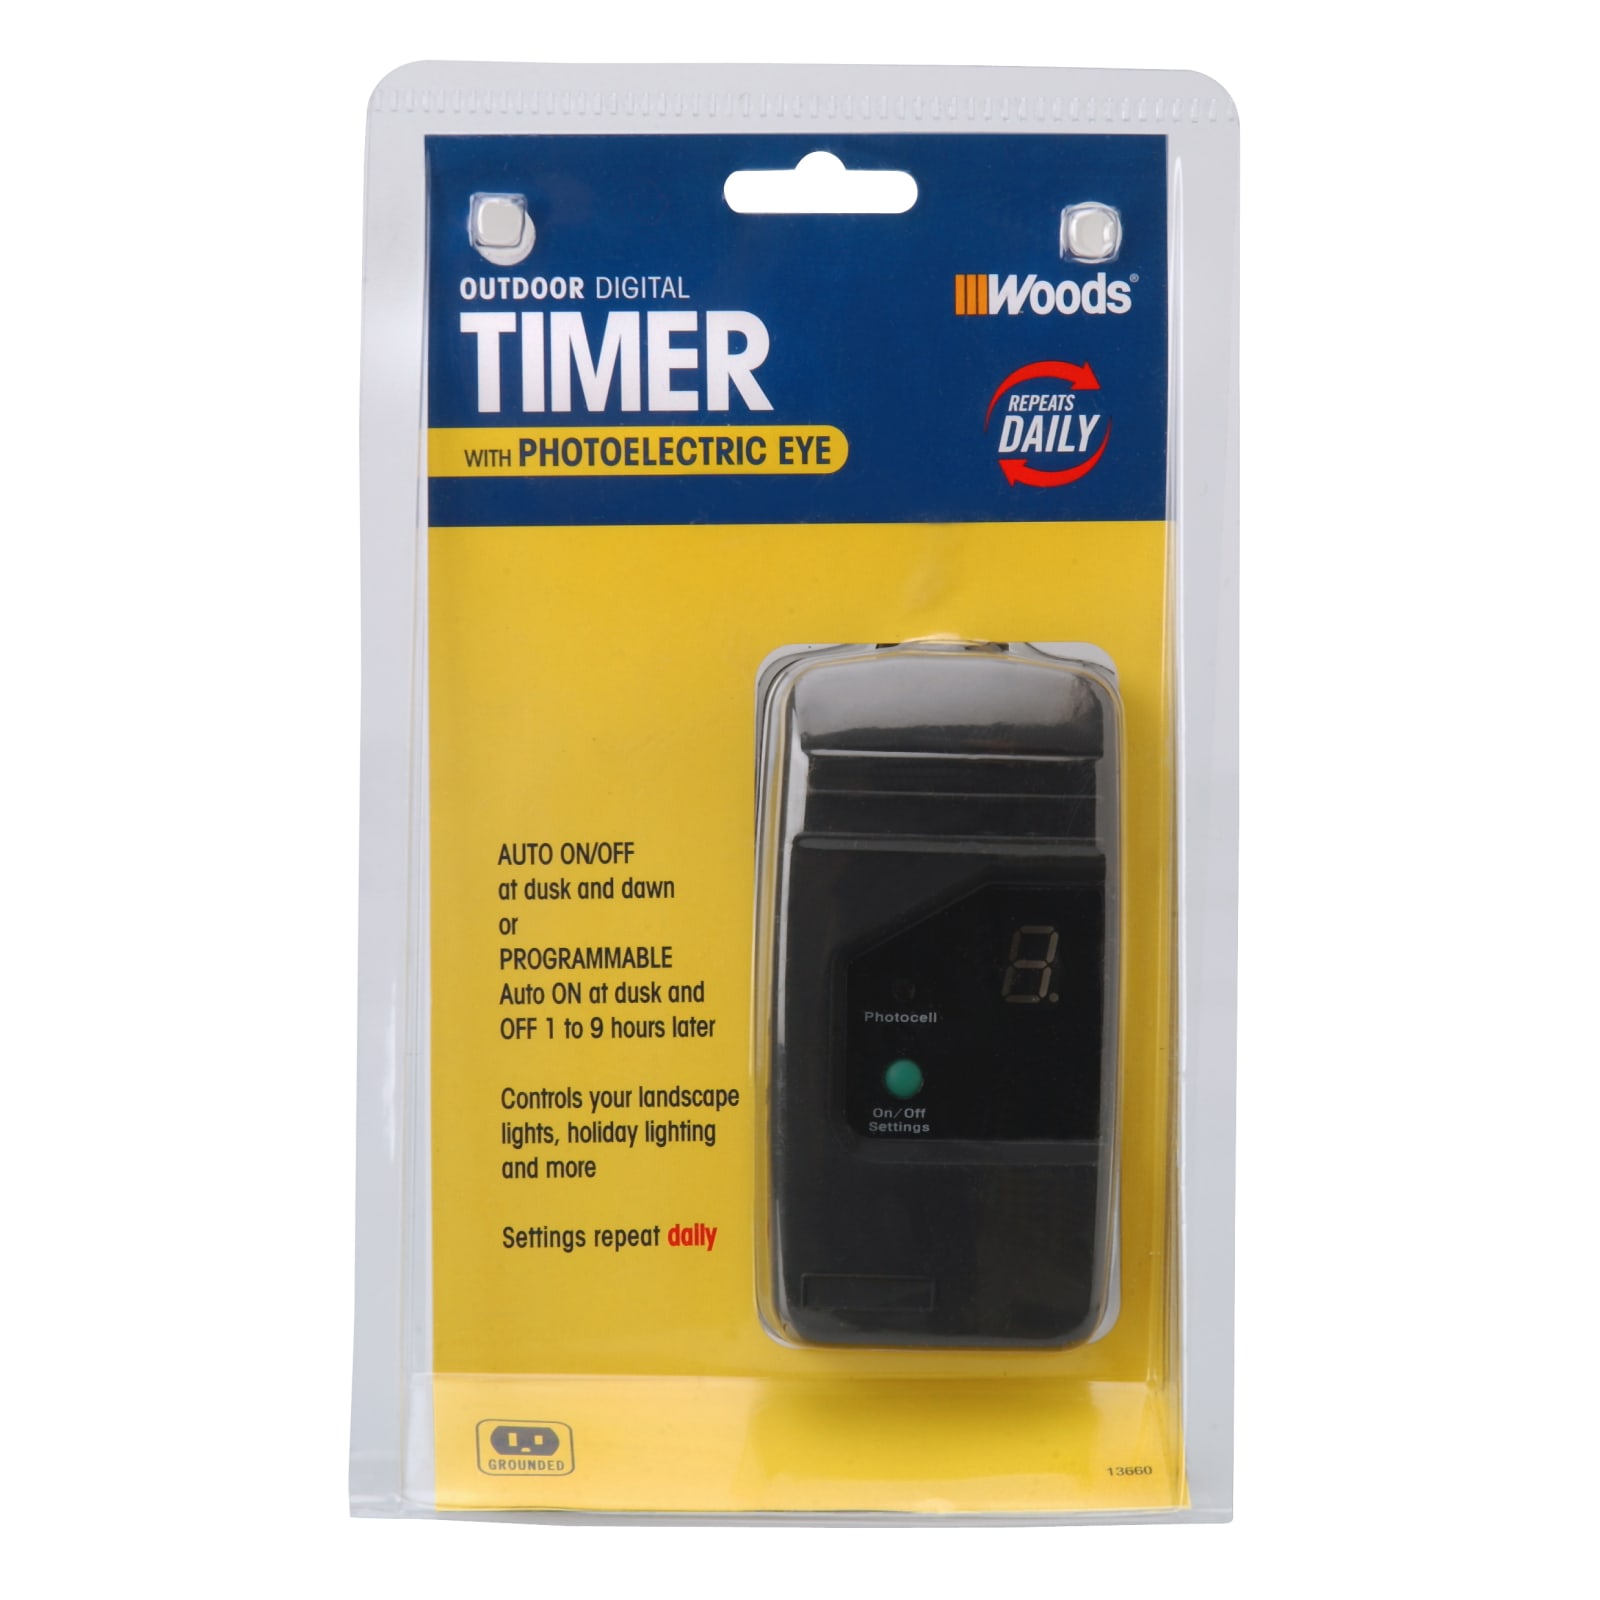 Woods 24-Hour Mini Digital Outlet Timer